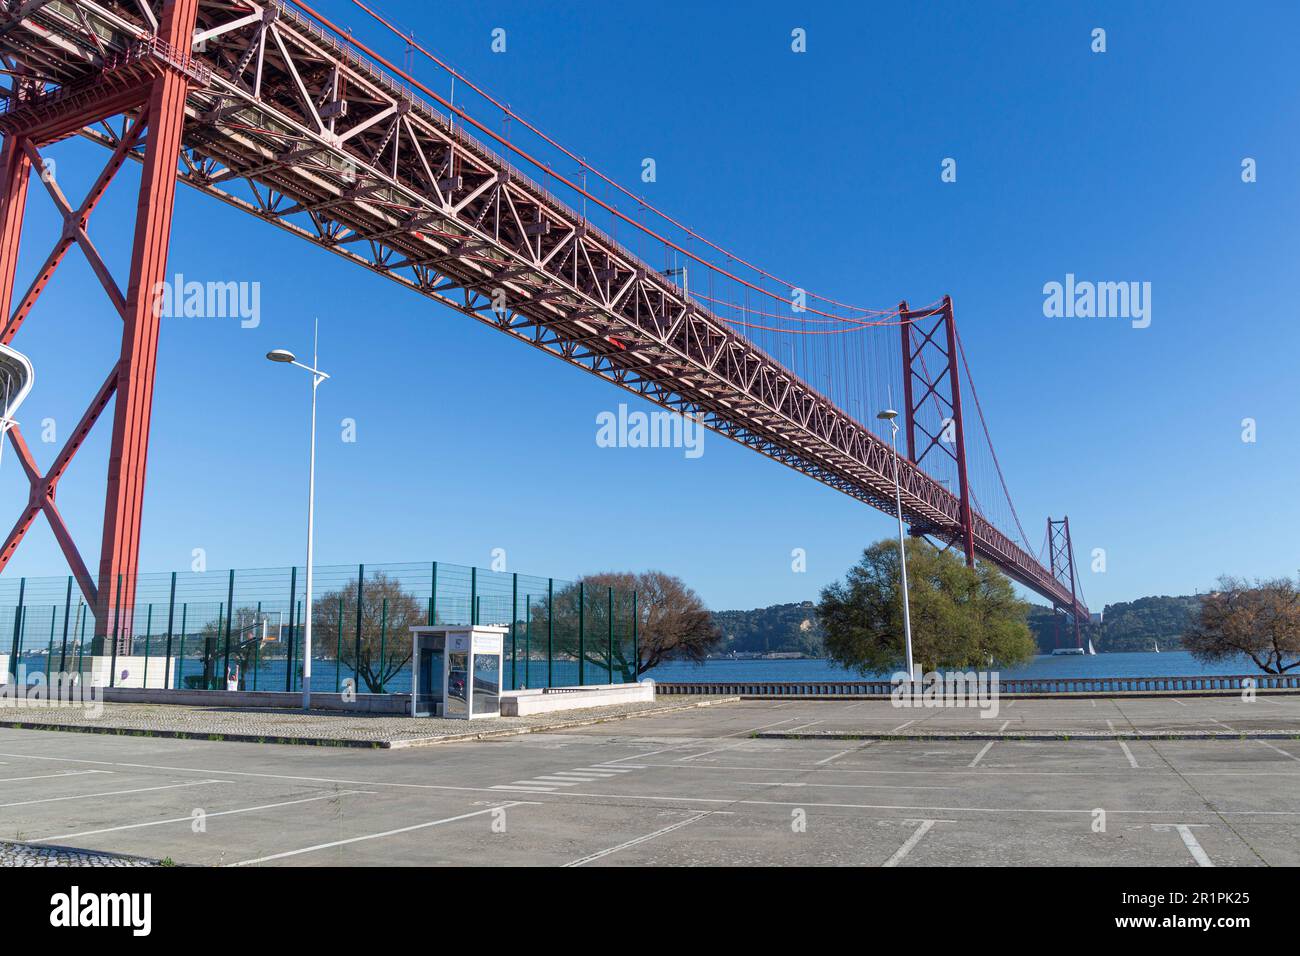 Il ponte del 25 aprile (Ponte 25 de Abril) è un ponte sospeso in acciaio situato a Lisbona, Portogallo, che attraversa il fiume Targus. E' uno dei punti di riferimento piu' famosi della regione. Foto Stock